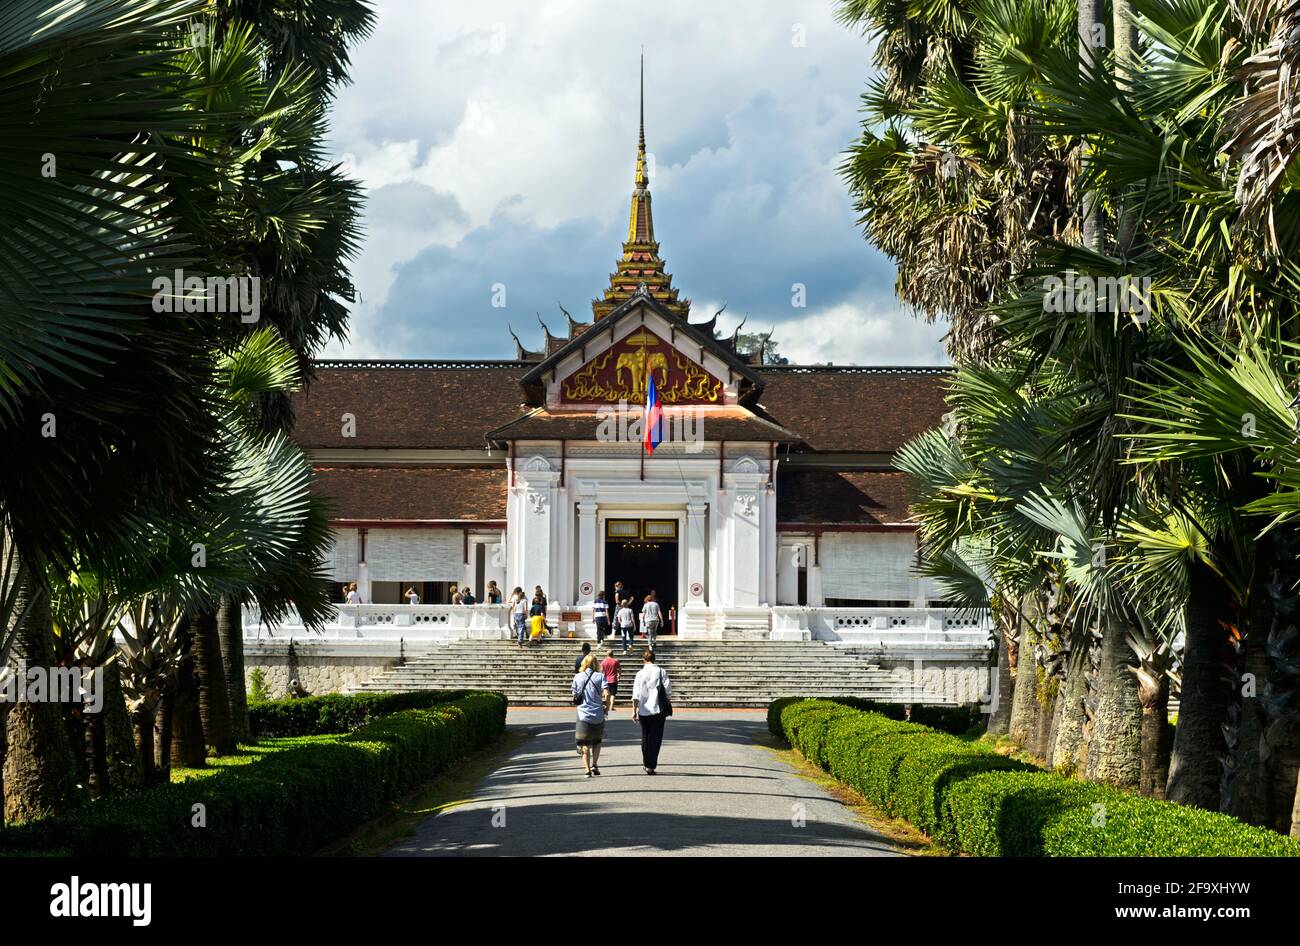 Royal Palace Museum, Luang Prabang, Laos Stock Photo